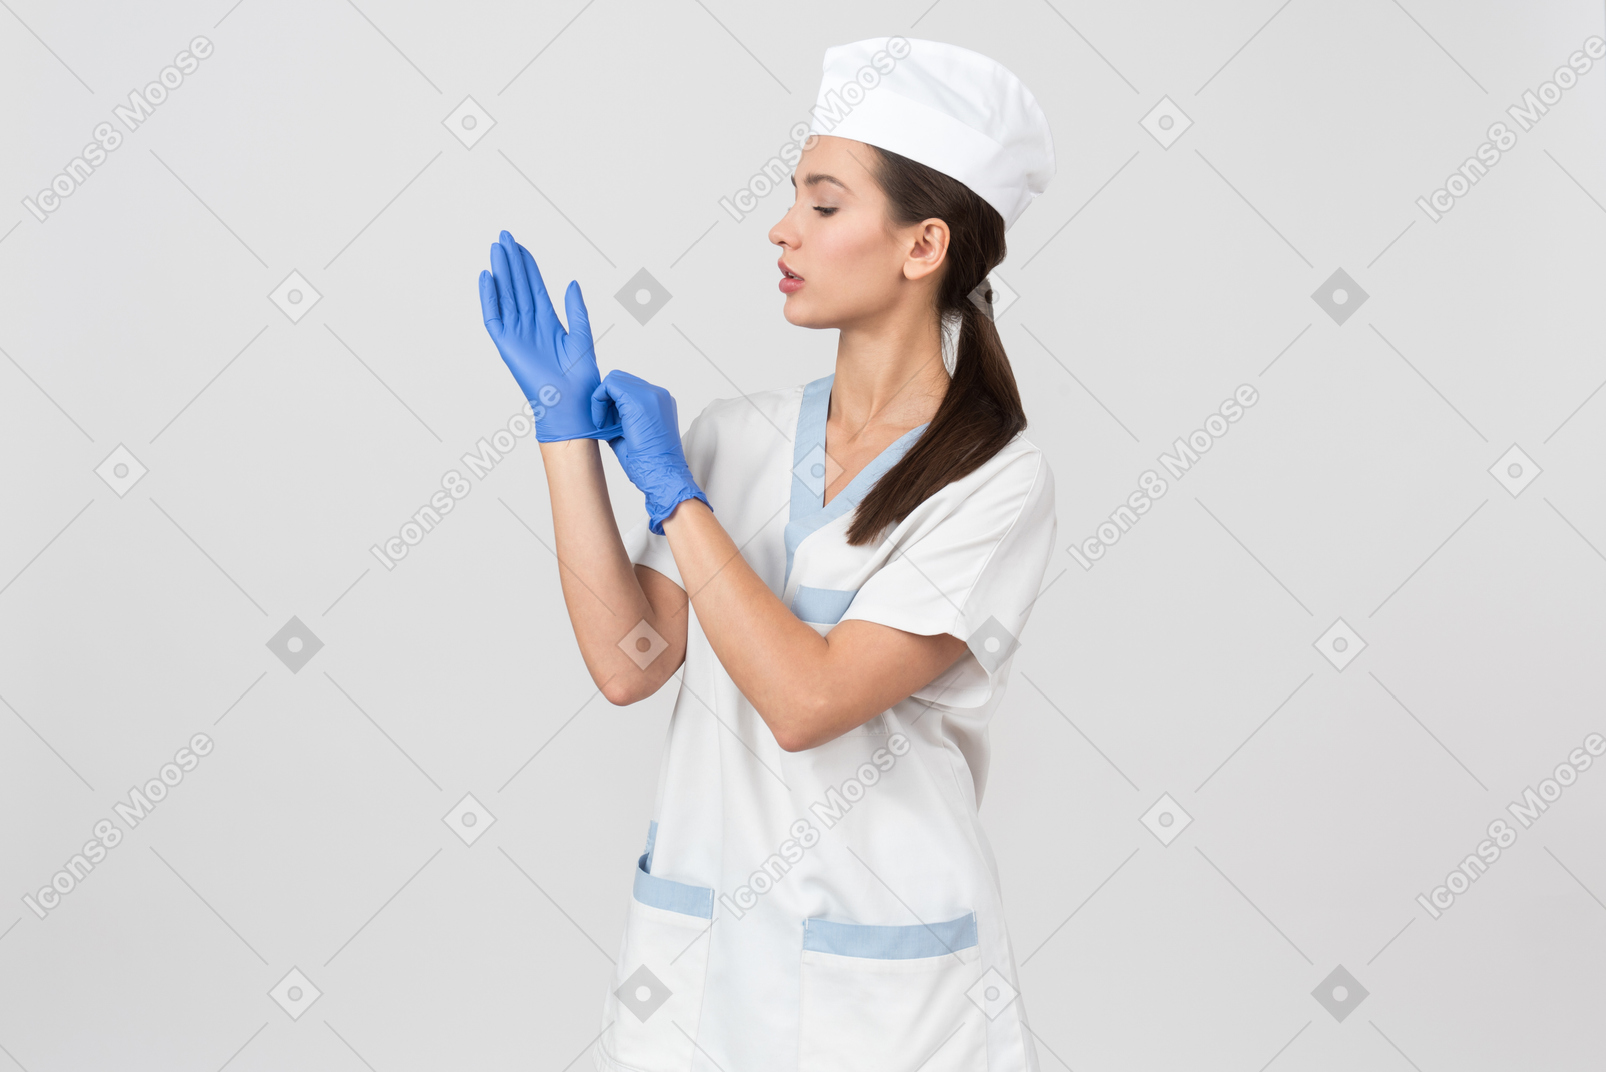 Привлекательная медсестра в медицинском халате надевает латексные перчатки